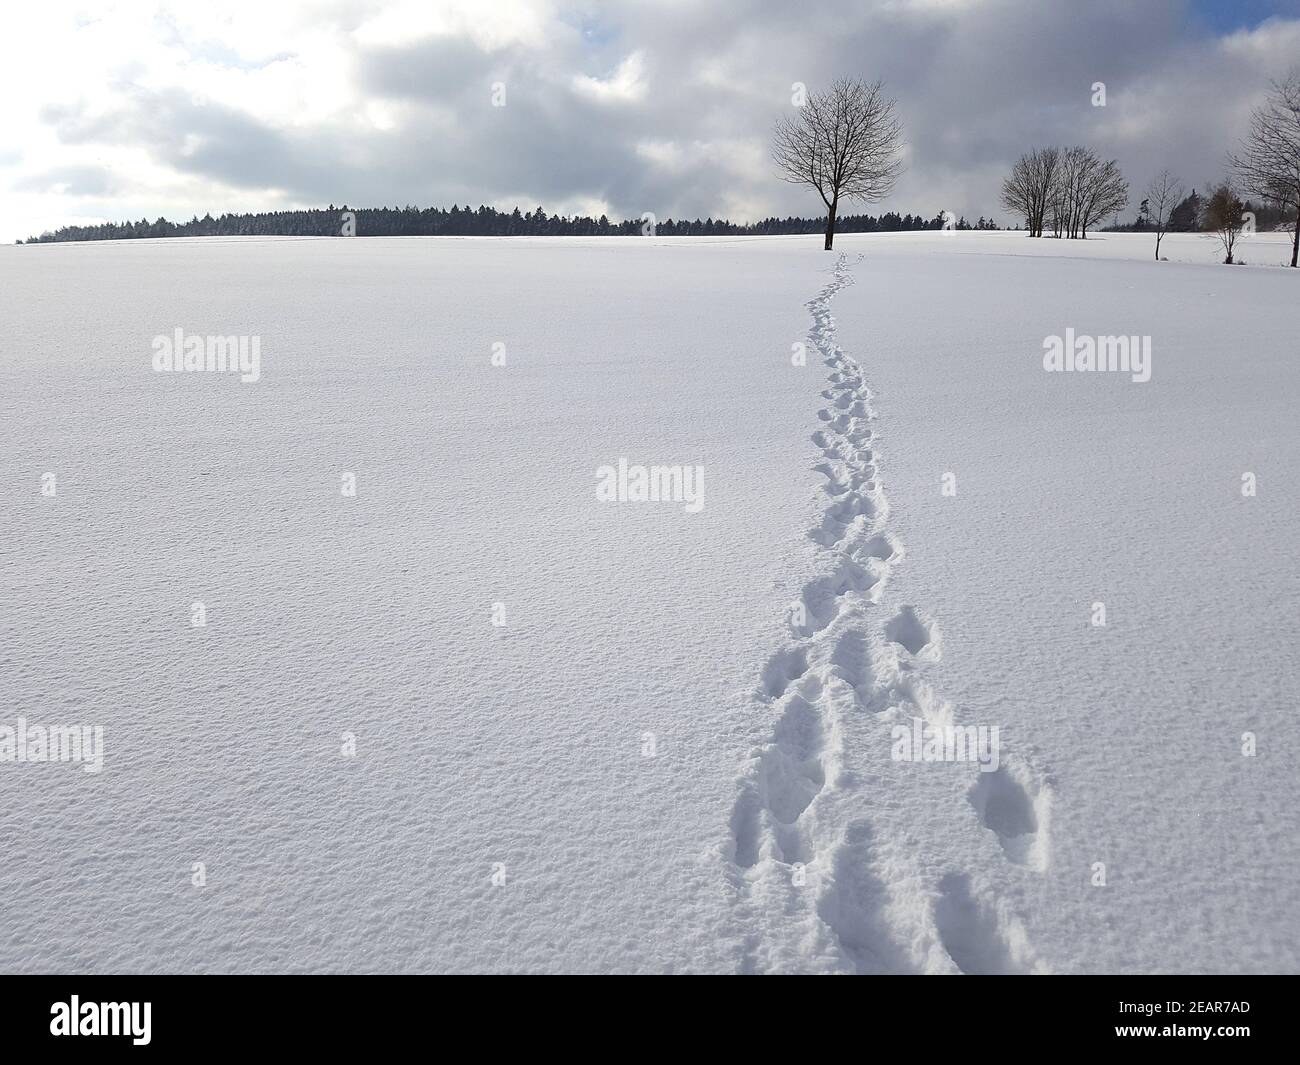 Fussspuren, Spuren, Schnee Stock Photo